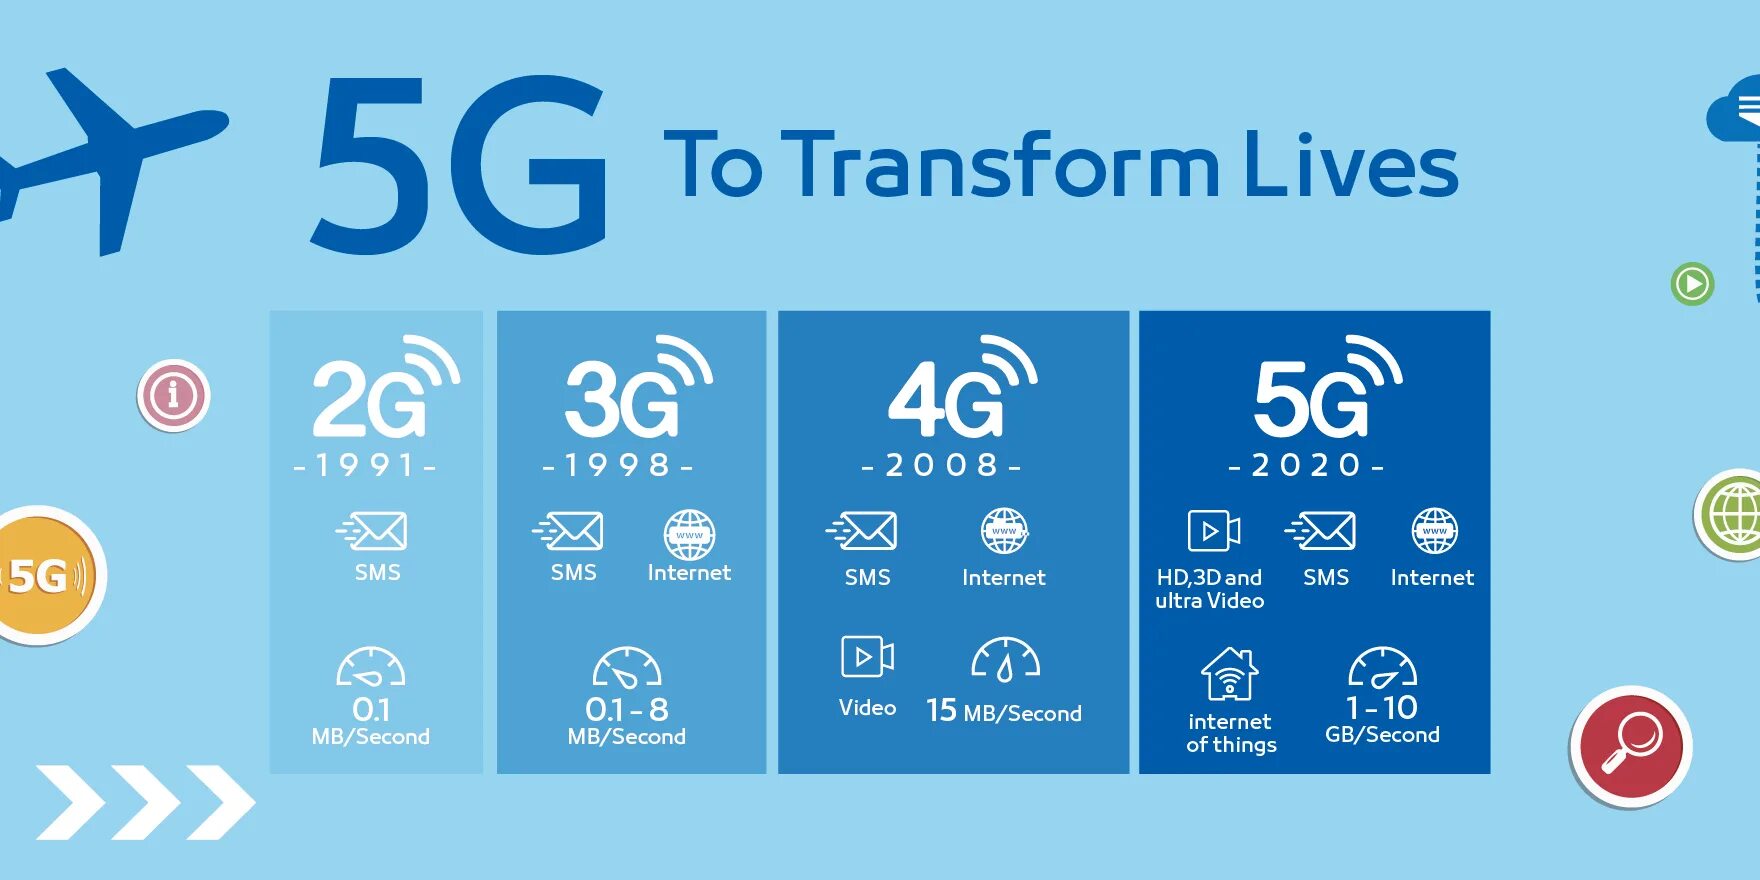 Против 4g. Технологии сотовой связи 2g 3g 4g. Поколения сотовой связи 2g 3g и 4g. Что такое 2g 3g 4g в сотовой связи. Скорости мобильного интернета 2g 3g 4g.